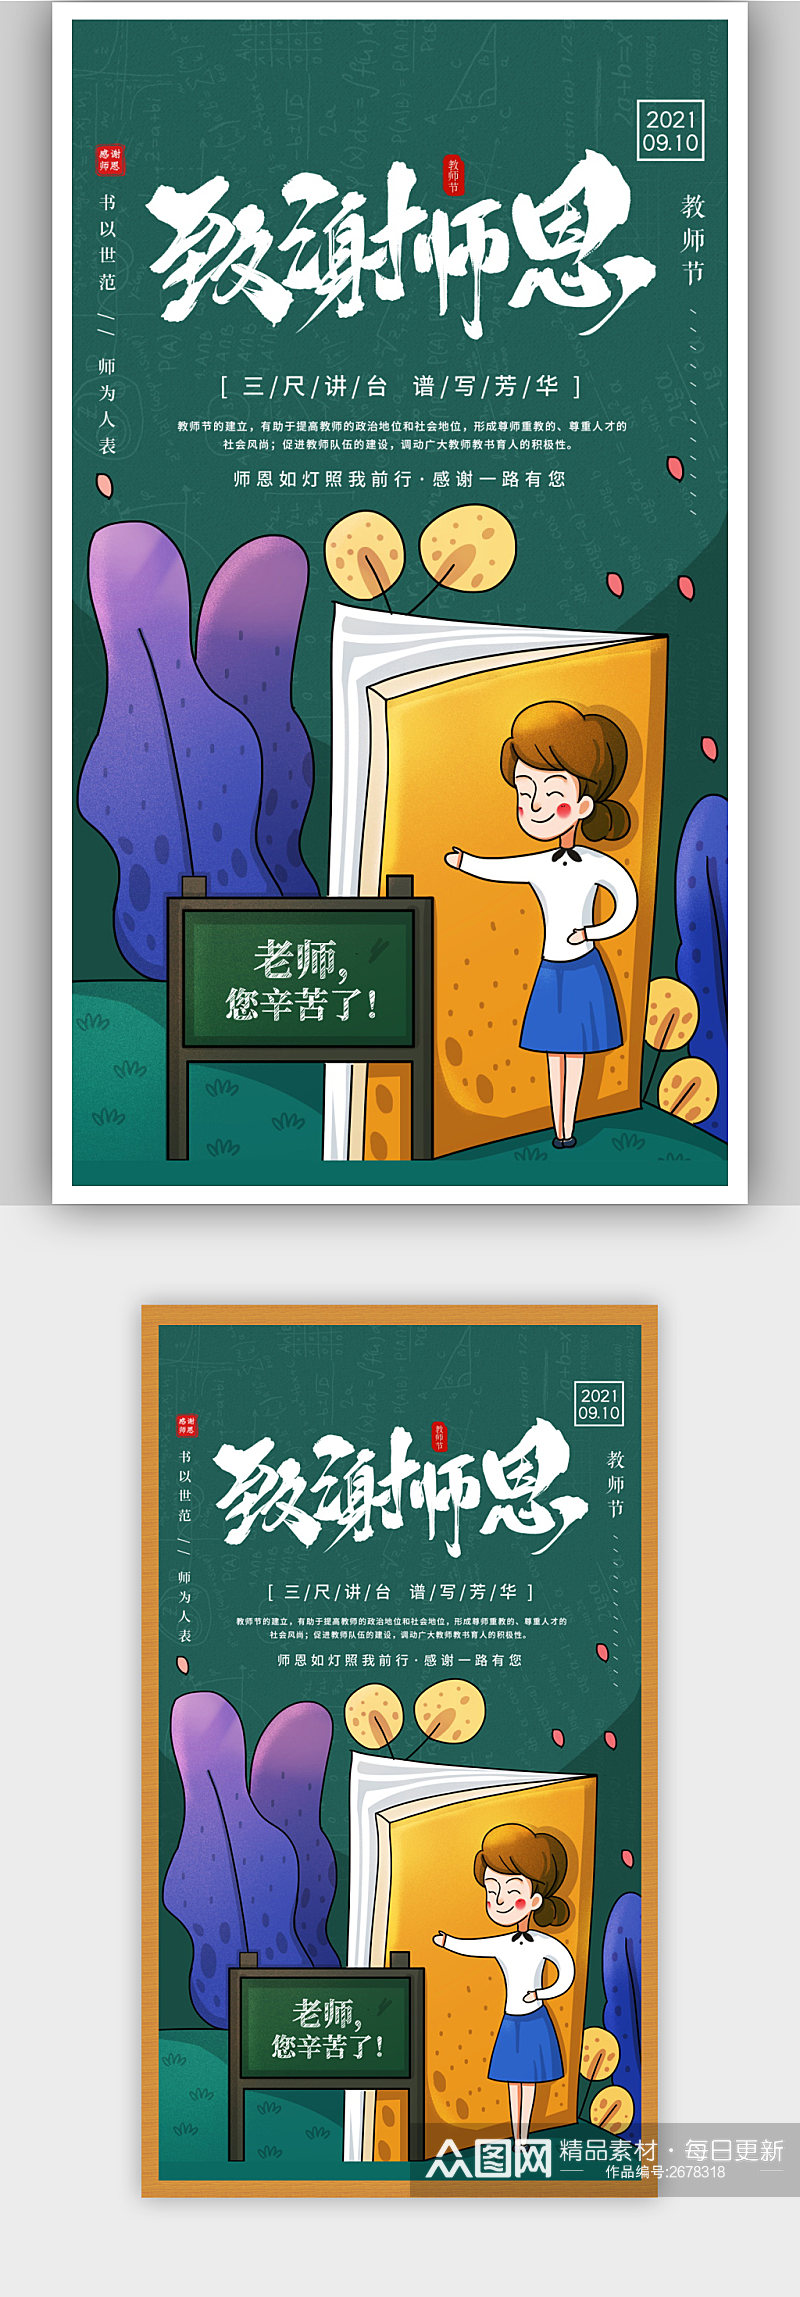 简约插画风致谢师恩教师节宣传海报素材